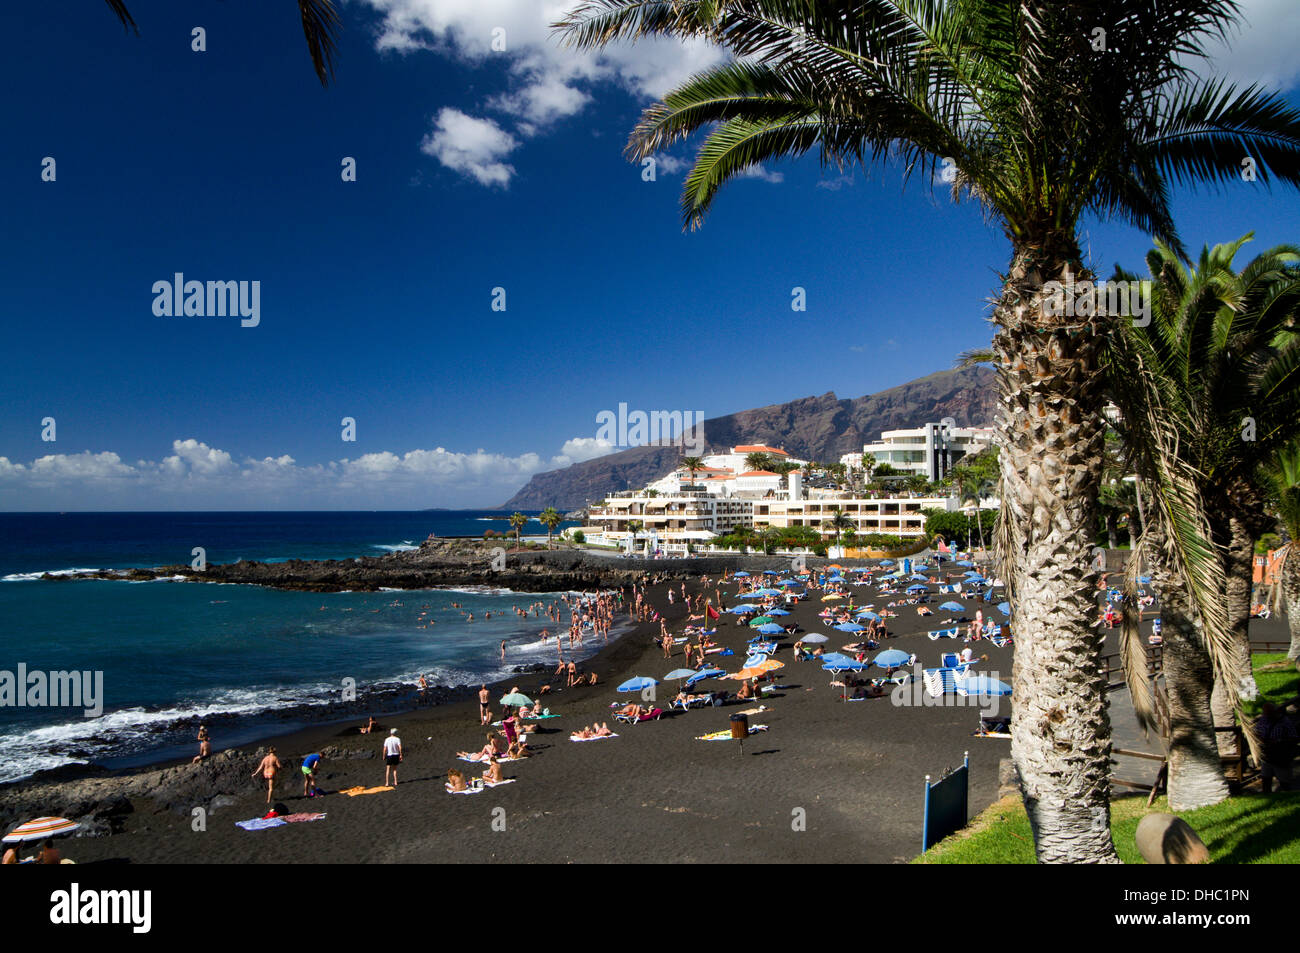 Plage de sable noir, Playa Arena, Tenerife, Canaries, Espagne. Banque D'Images